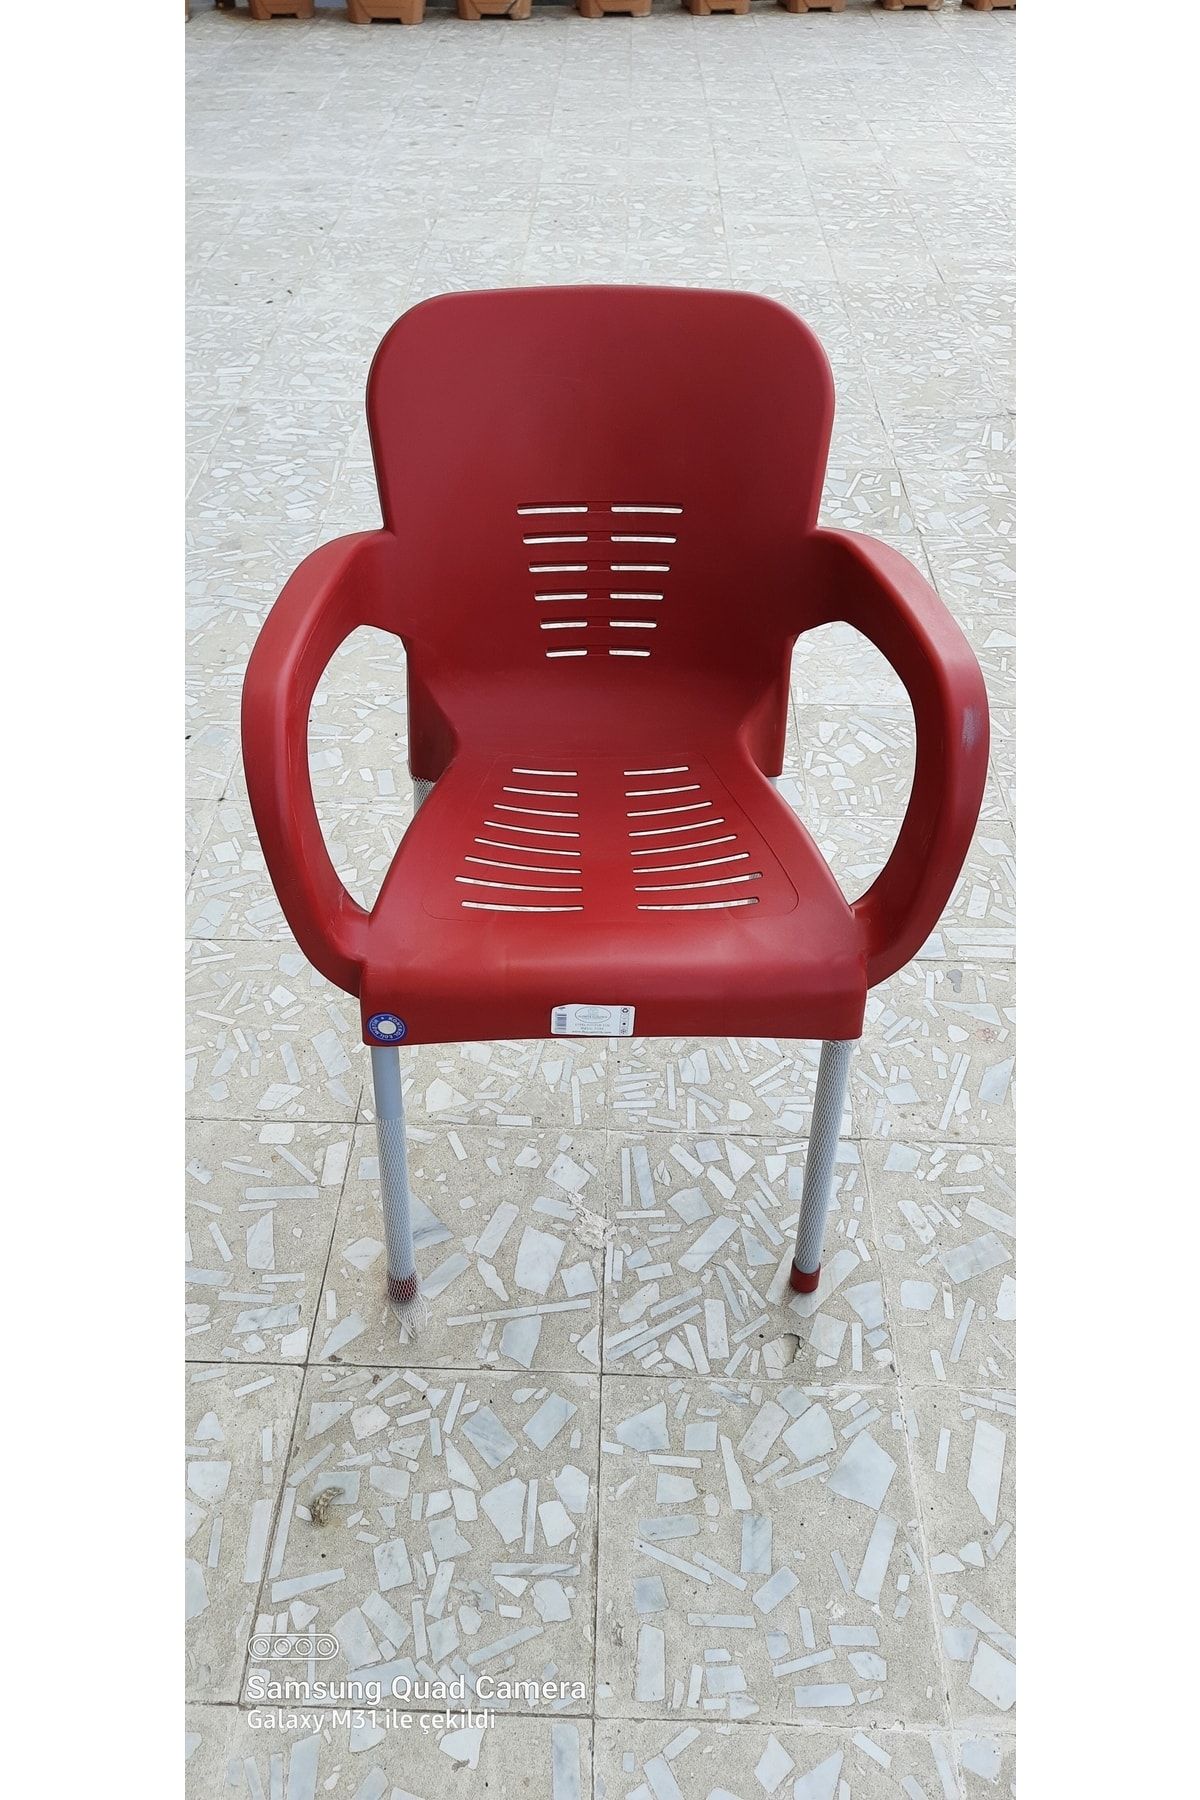 Söylemez Yöresel Plastik Metal Ayakli Sandalye 2 Adet (kırmızı)